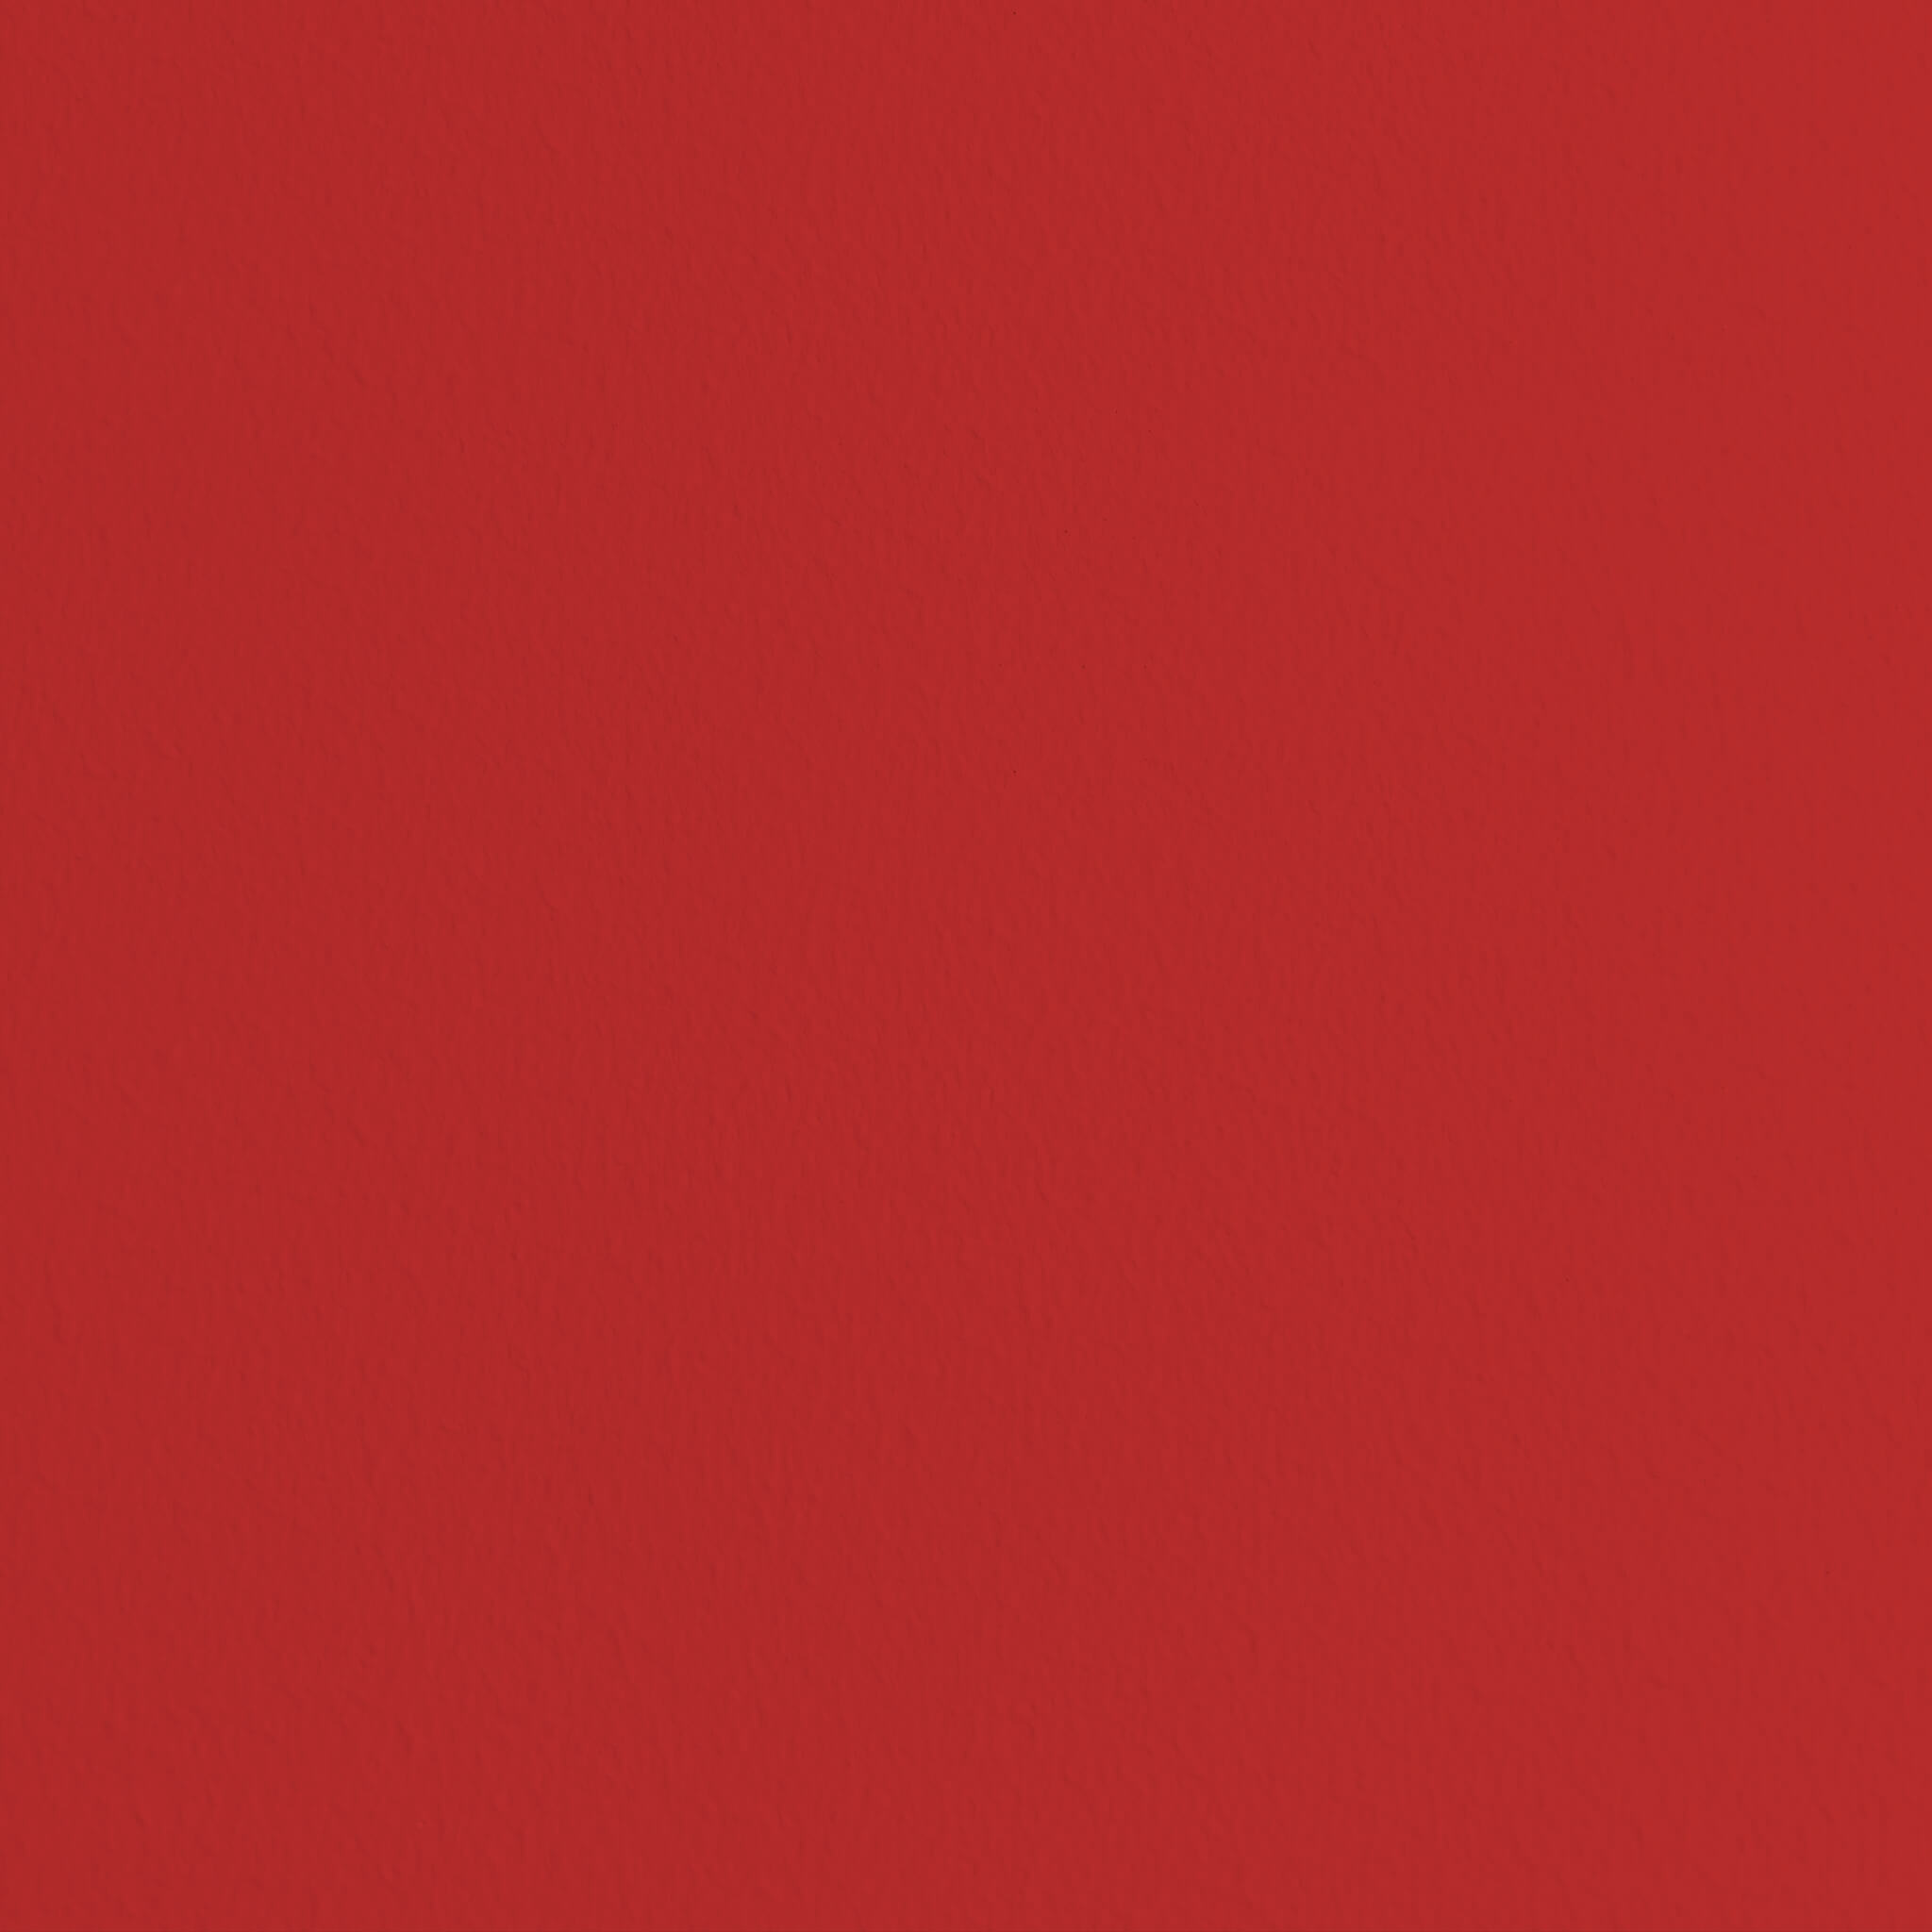 Mylands FTT 009 Bright Red - Marble Matt Emulsion / Wandfarbe, 2.5L